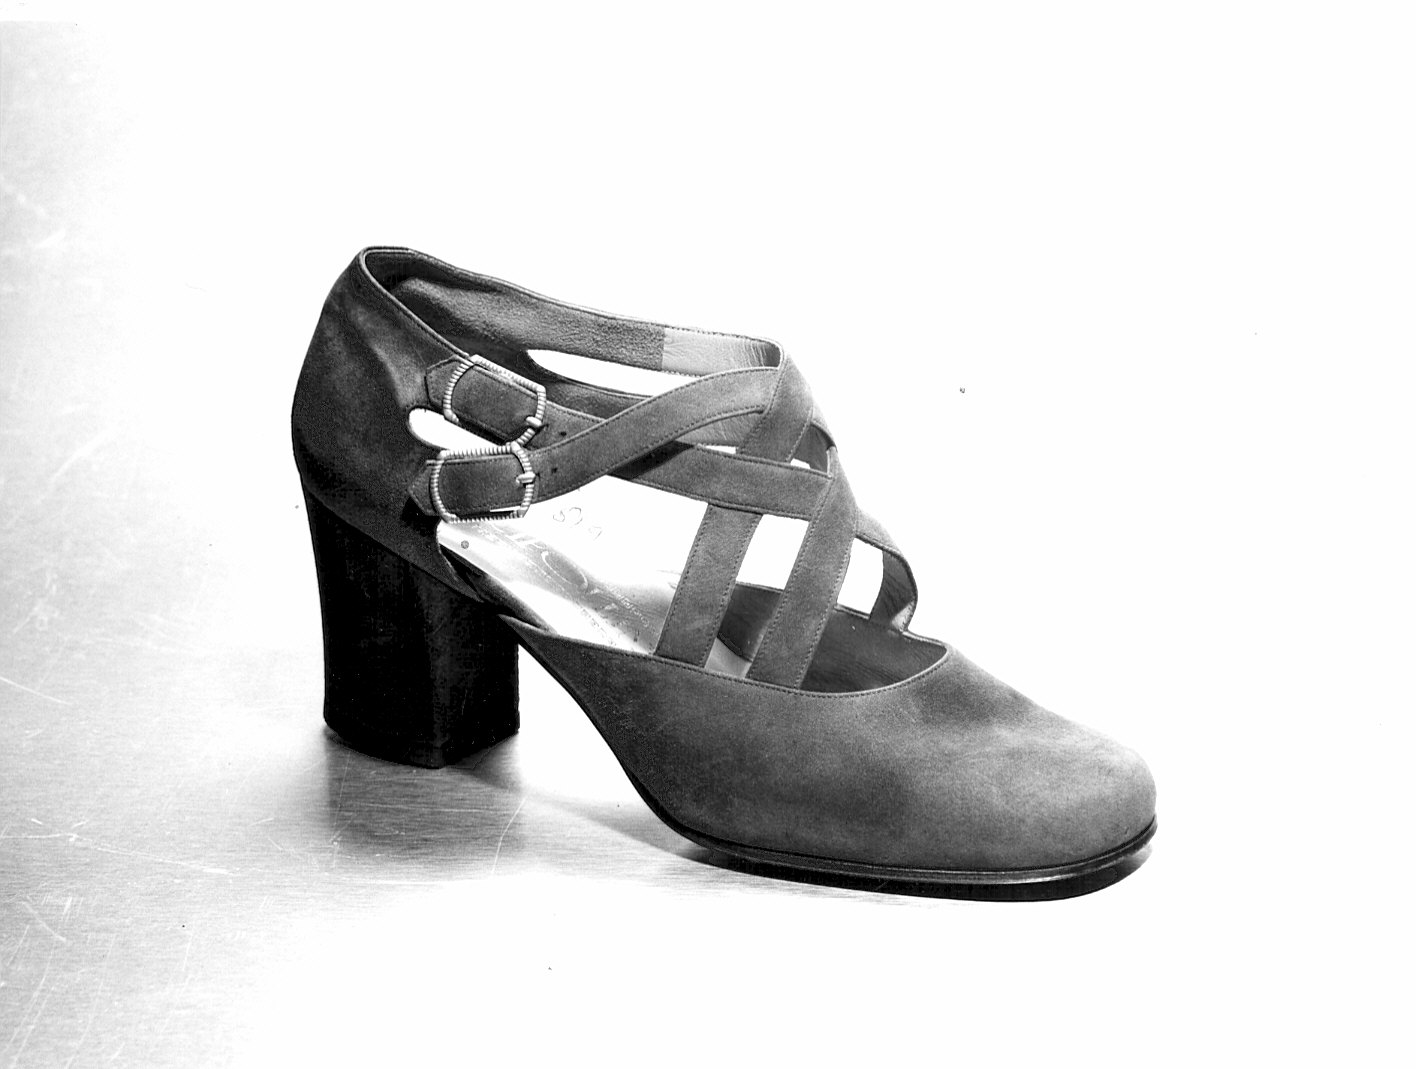 Non rilevato (scarpa) - produzione (1970)